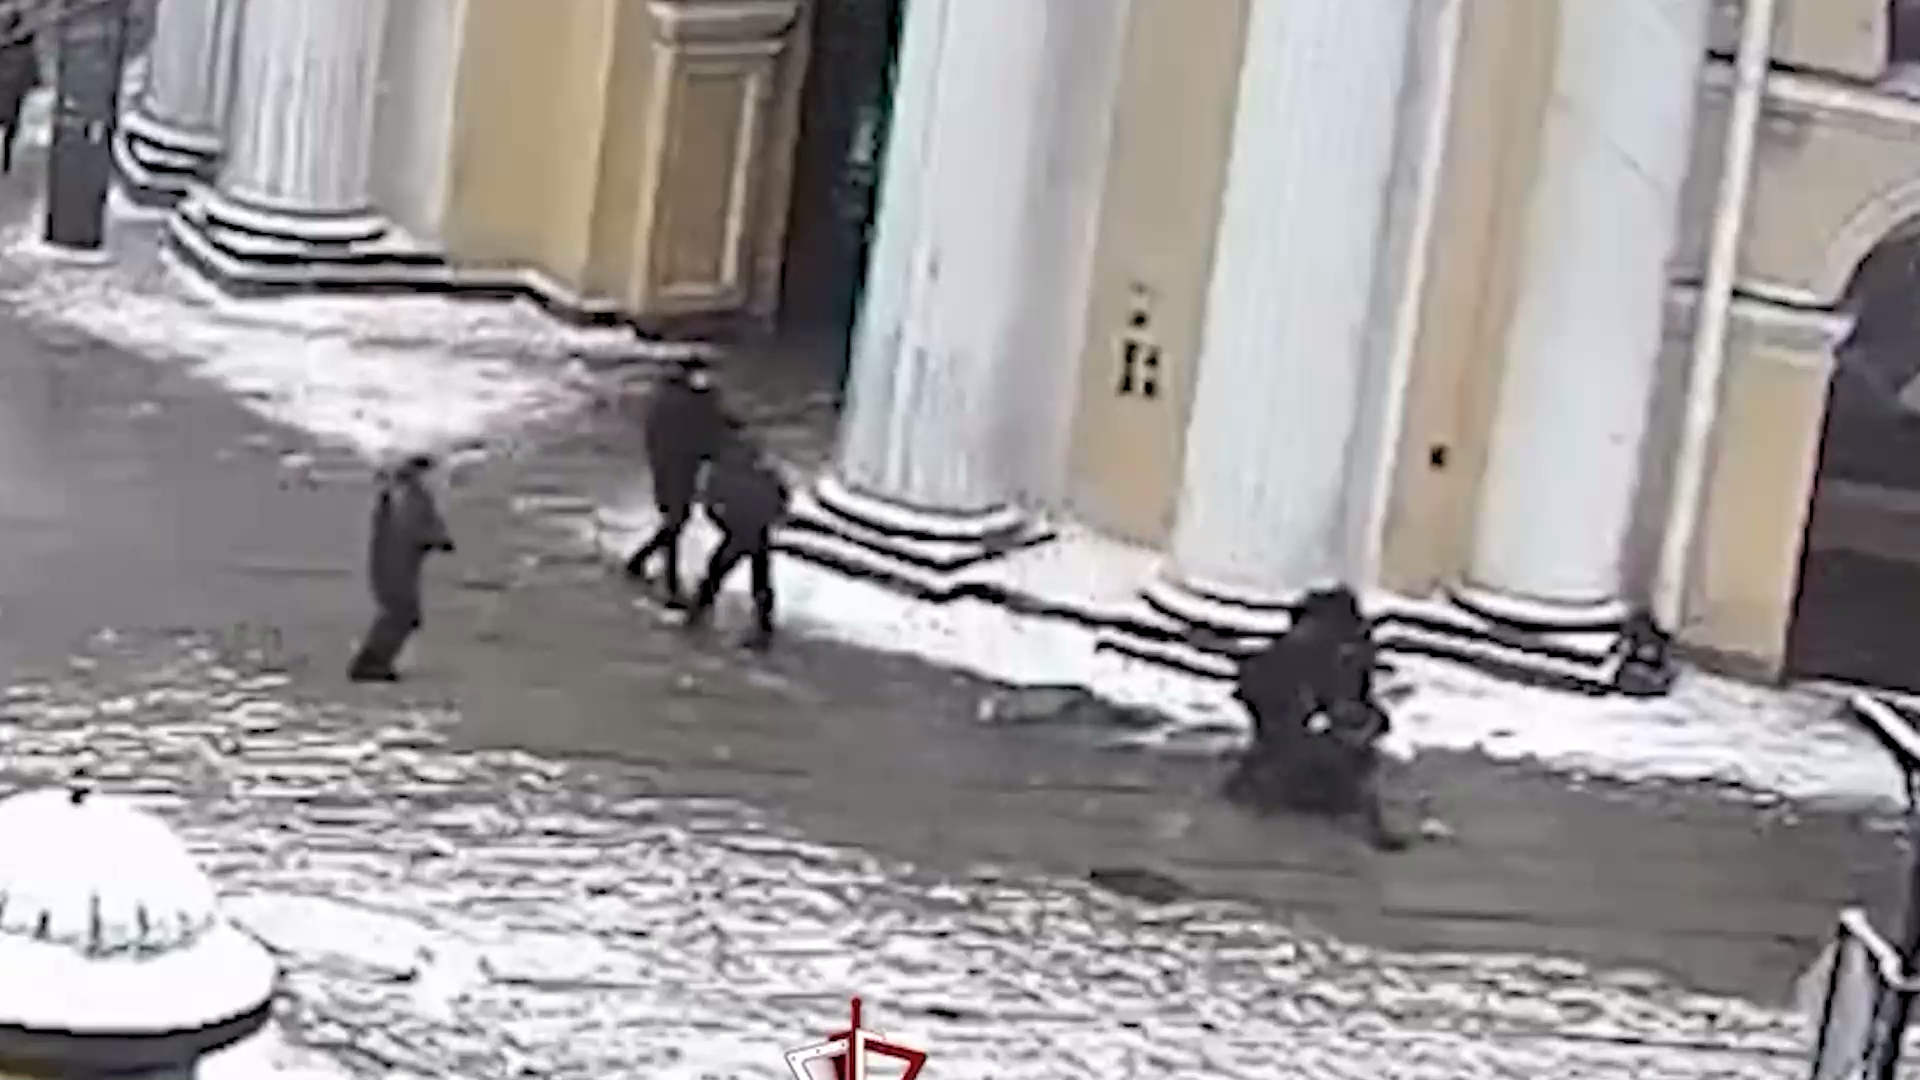 Момент выстрела в сотрудника ОМОНа в центре Санкт-Петербурга попал на видео